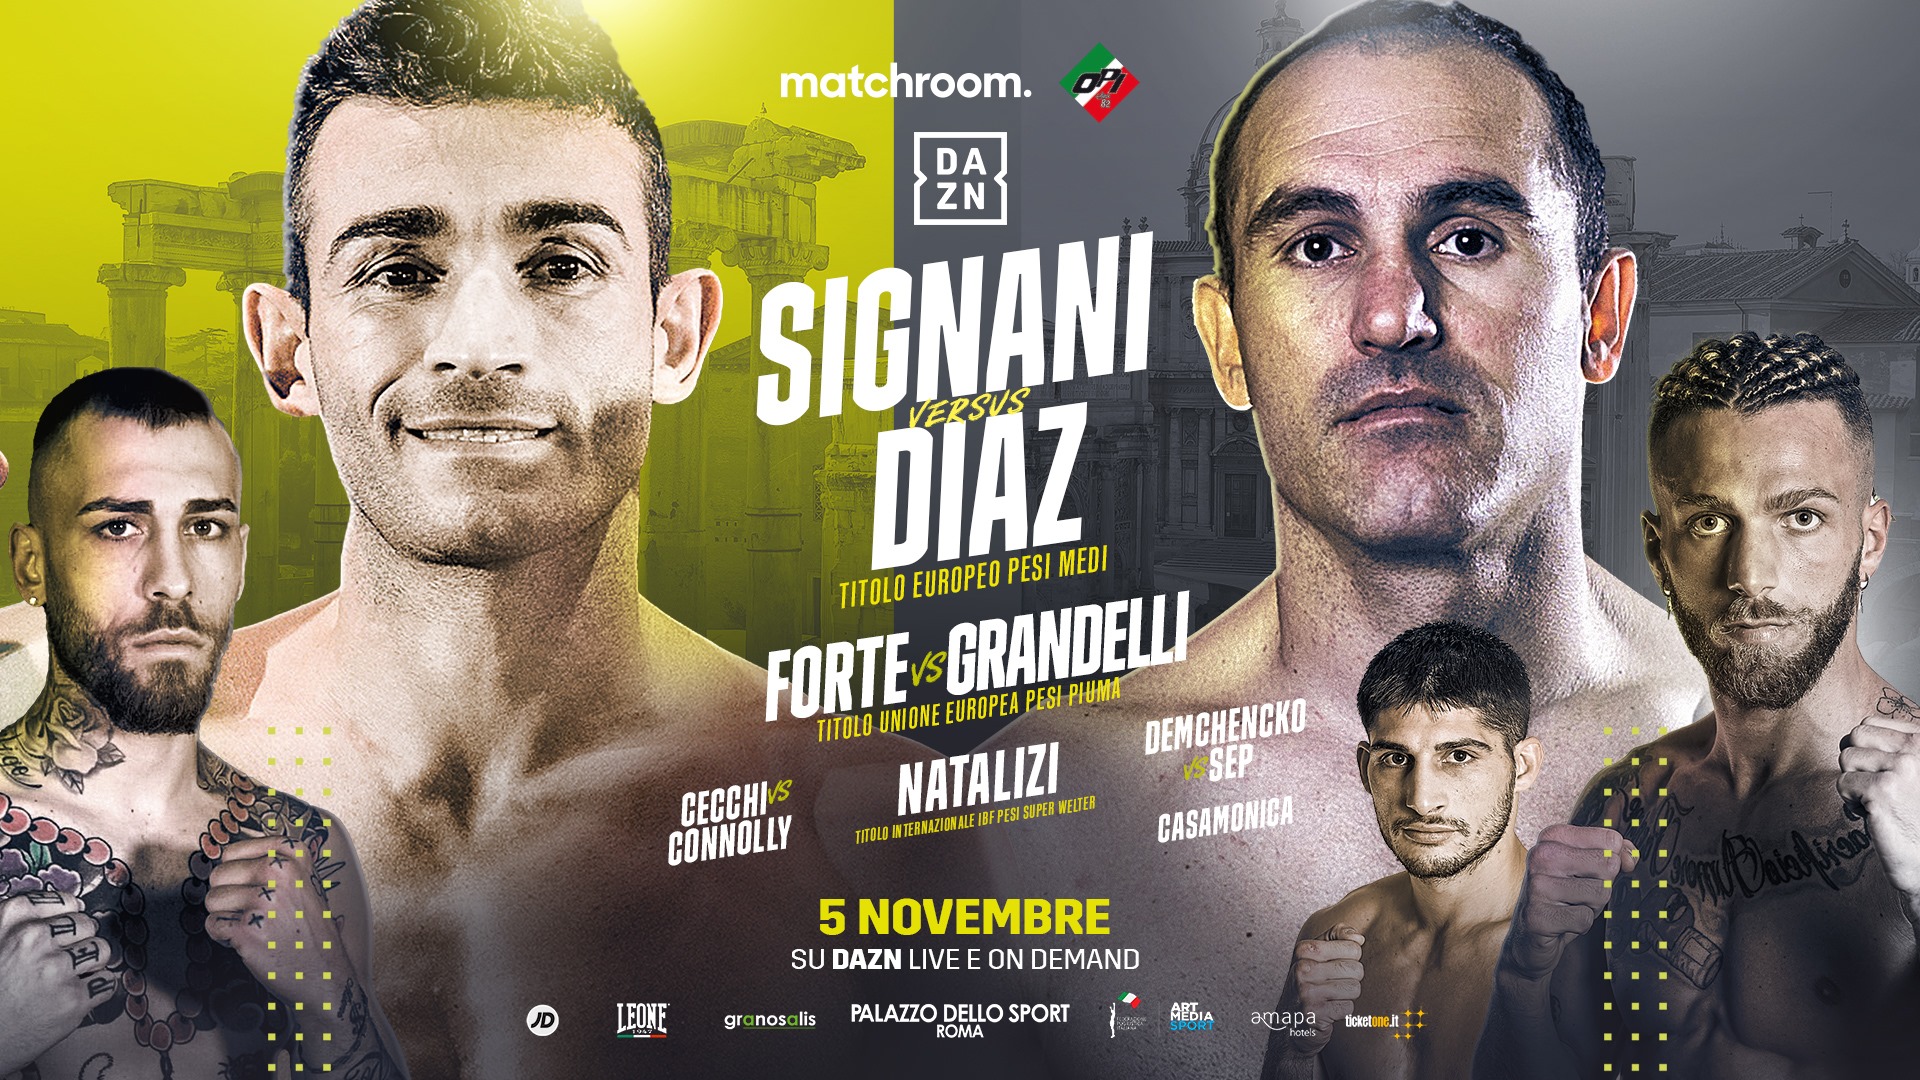 il 5 novembre al PalaEur la Roma Boxing Night - Main Event il Titolo Europeo Medi Signani vs Diaz 